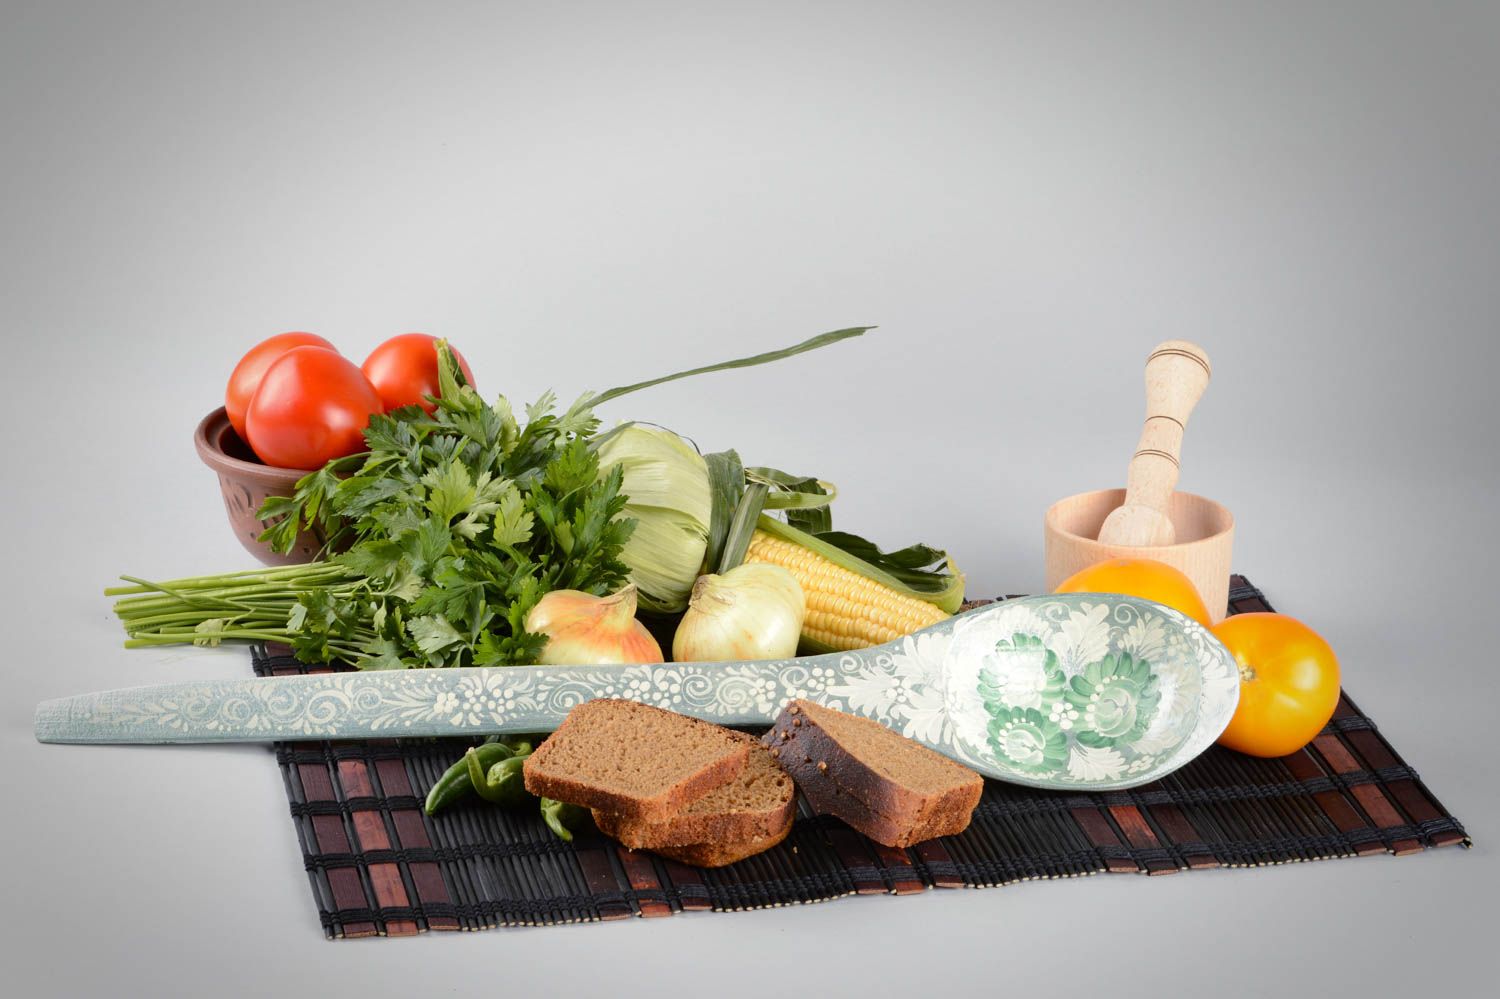 Расписная ложка ручной работы аксессуар для кухни деревянная посуда декоративная фото 1